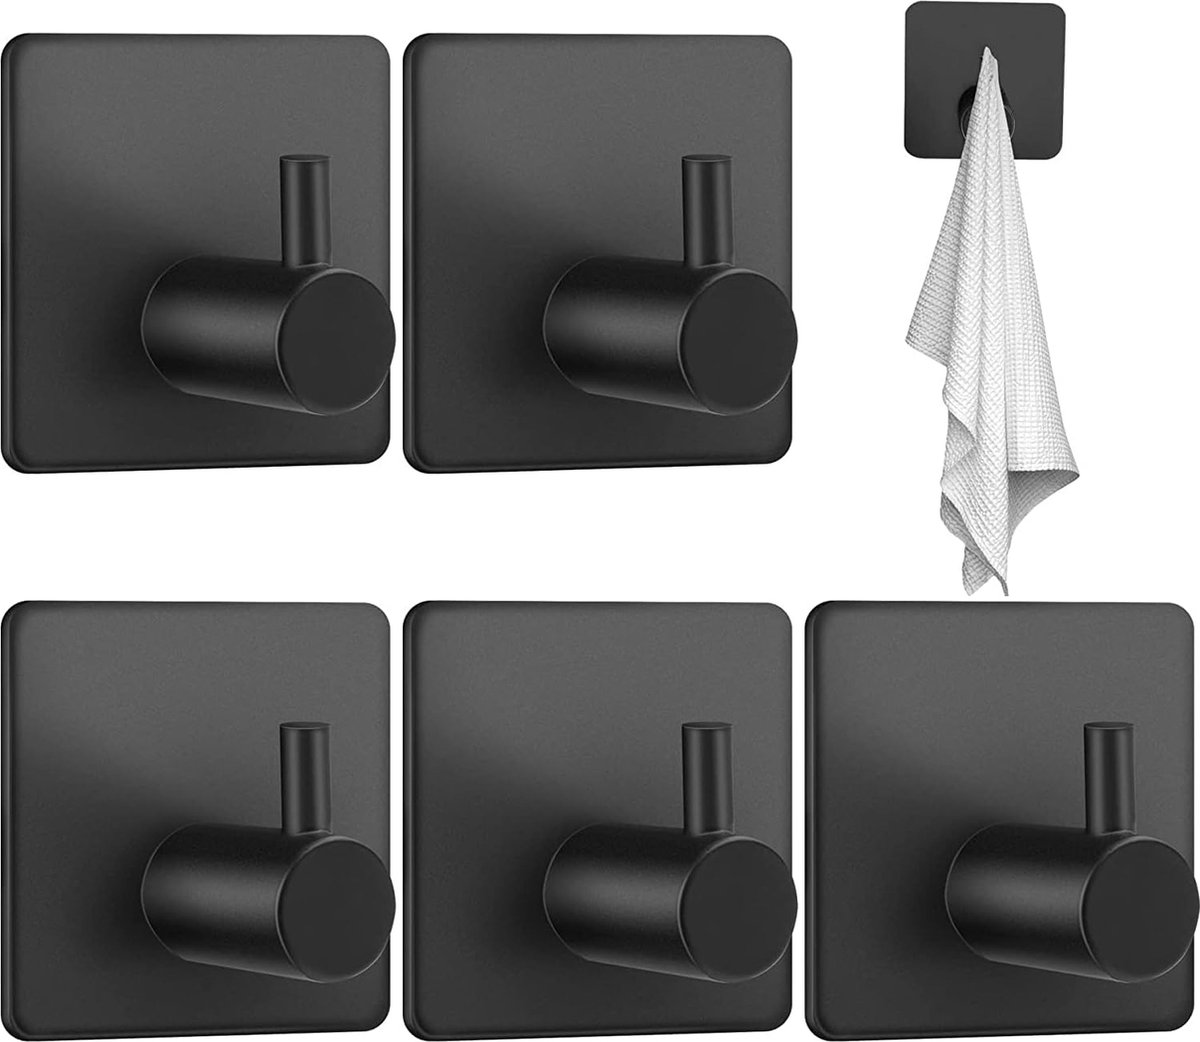 Handdoekhaken, 5 stuks zelfklevende haken, handdoekhouder, zonder boren, haken, zelfklevend, zwart, ideaal voor badkamer, toilet, keuken